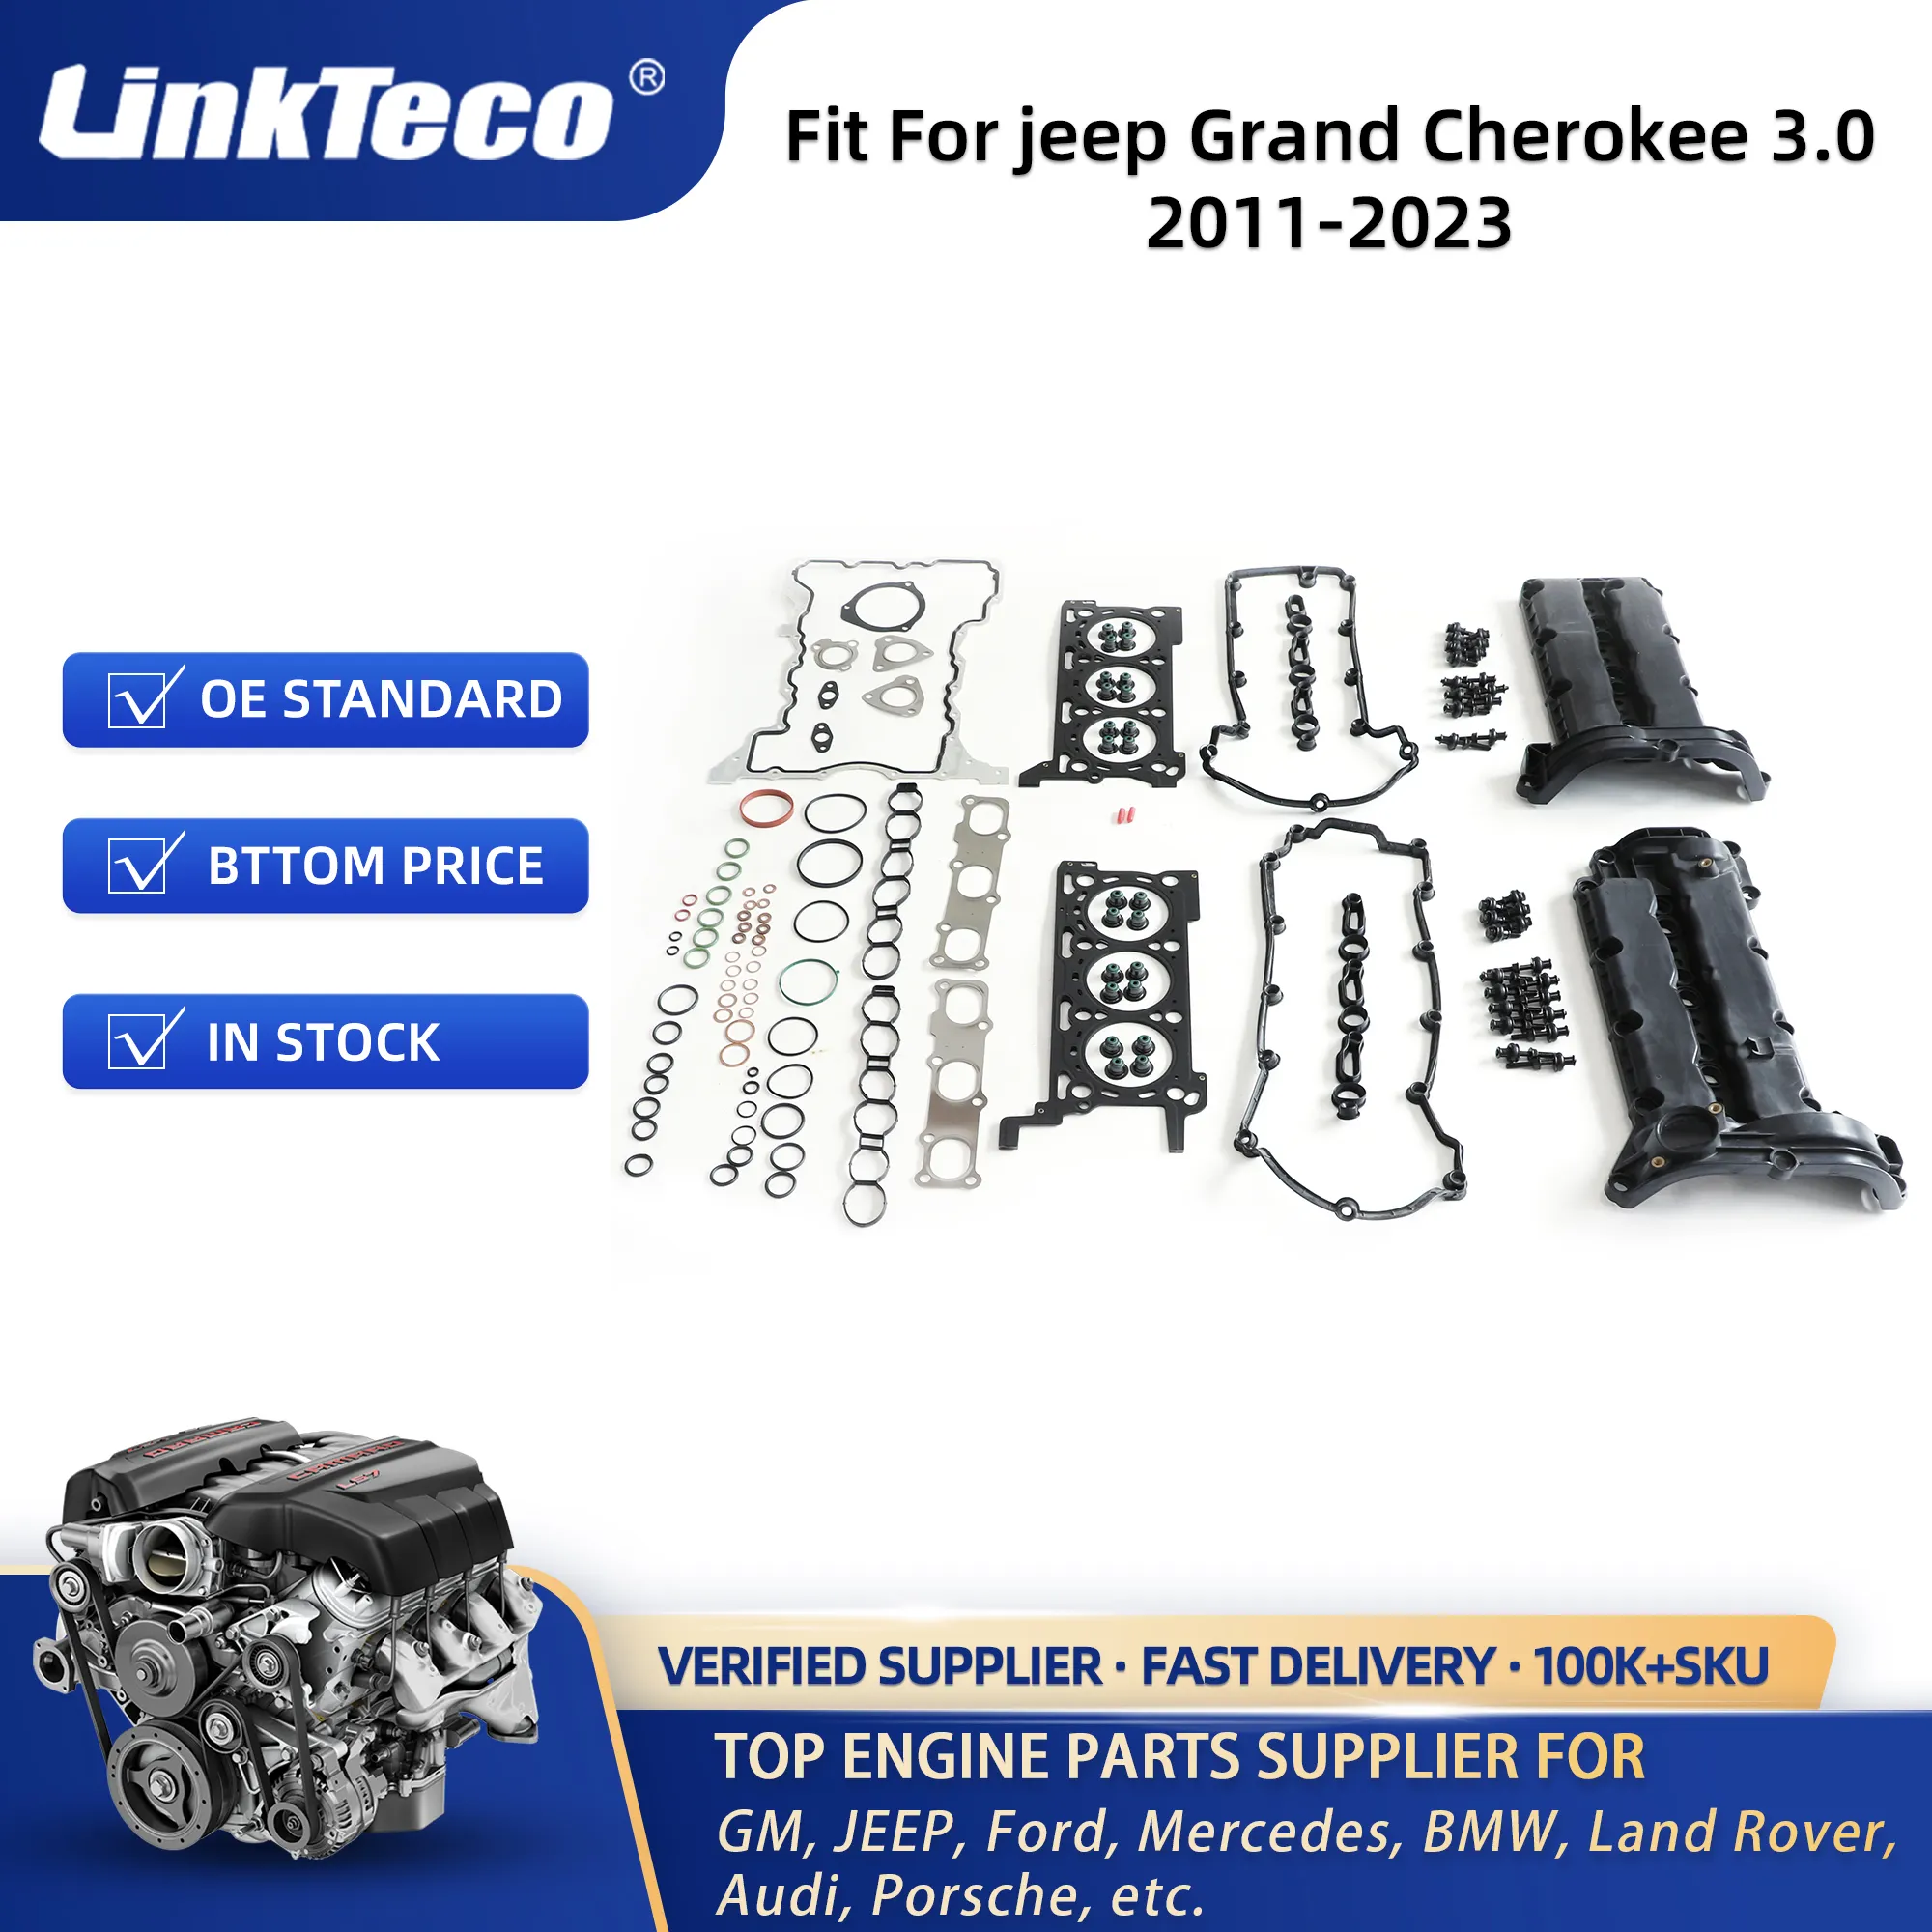 Kit de corrente de distribuição de junta da cabeça do cilindro, rolamento principal, virabrequim para Jeep Grand Cherokee 3.0 crd diesel exf Ram 1500 2011 - 2023